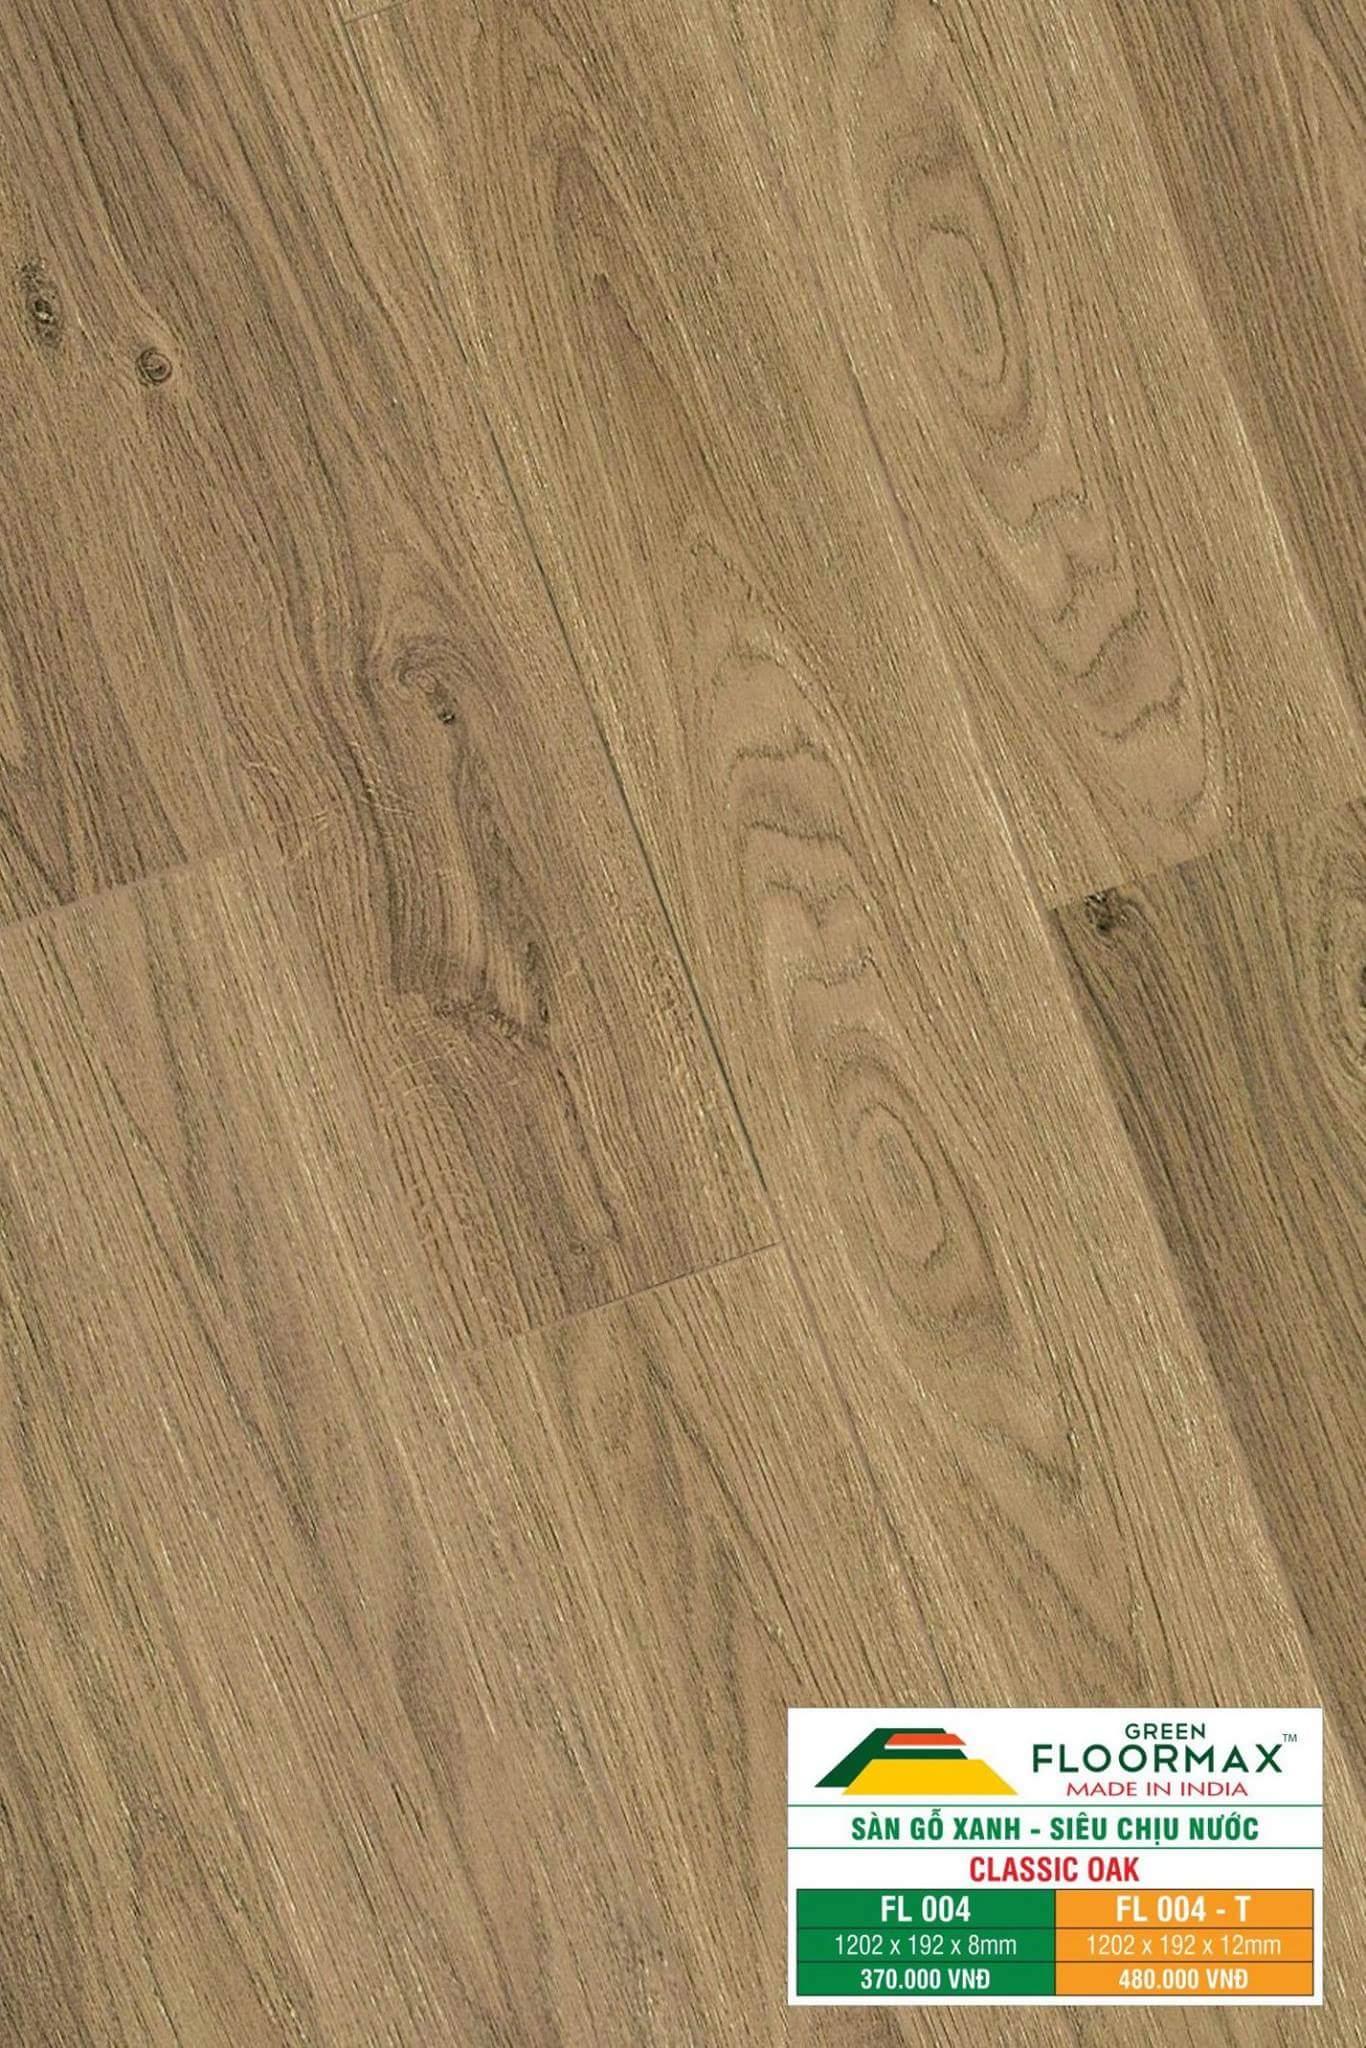 Sàn gỗ Ấn Độ FL 004 